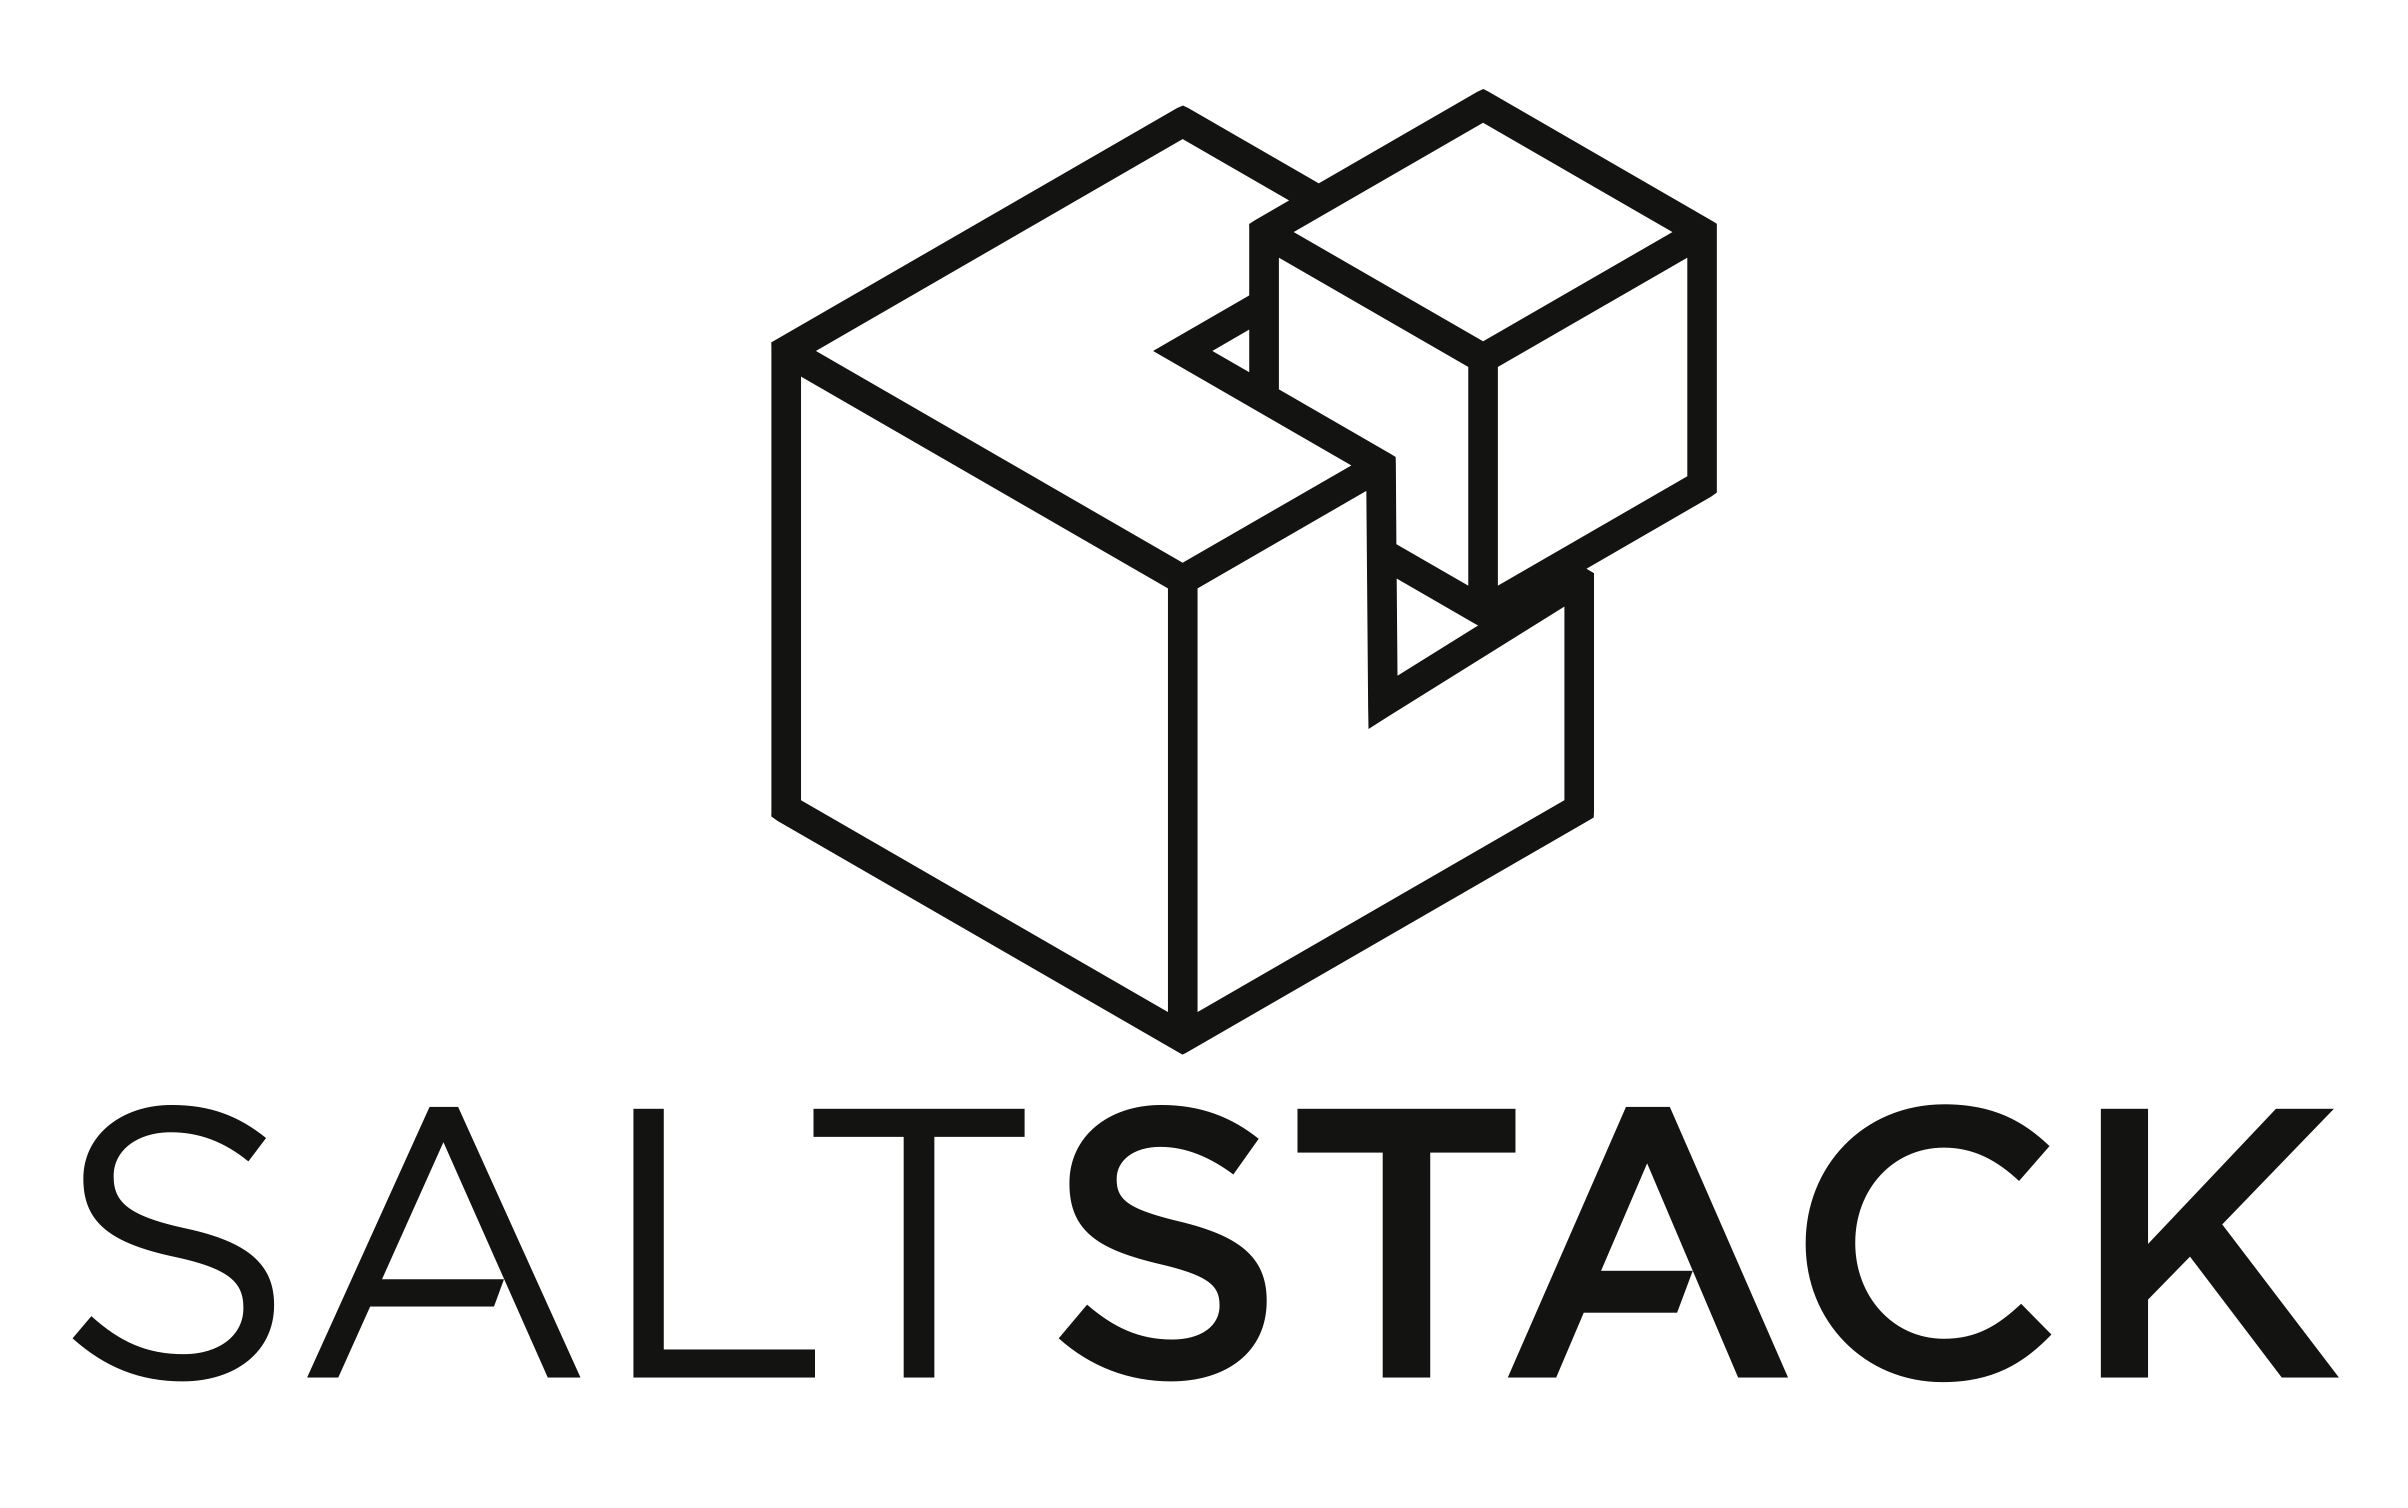 Configuration management tools in DevOps. The logo of Saltstack